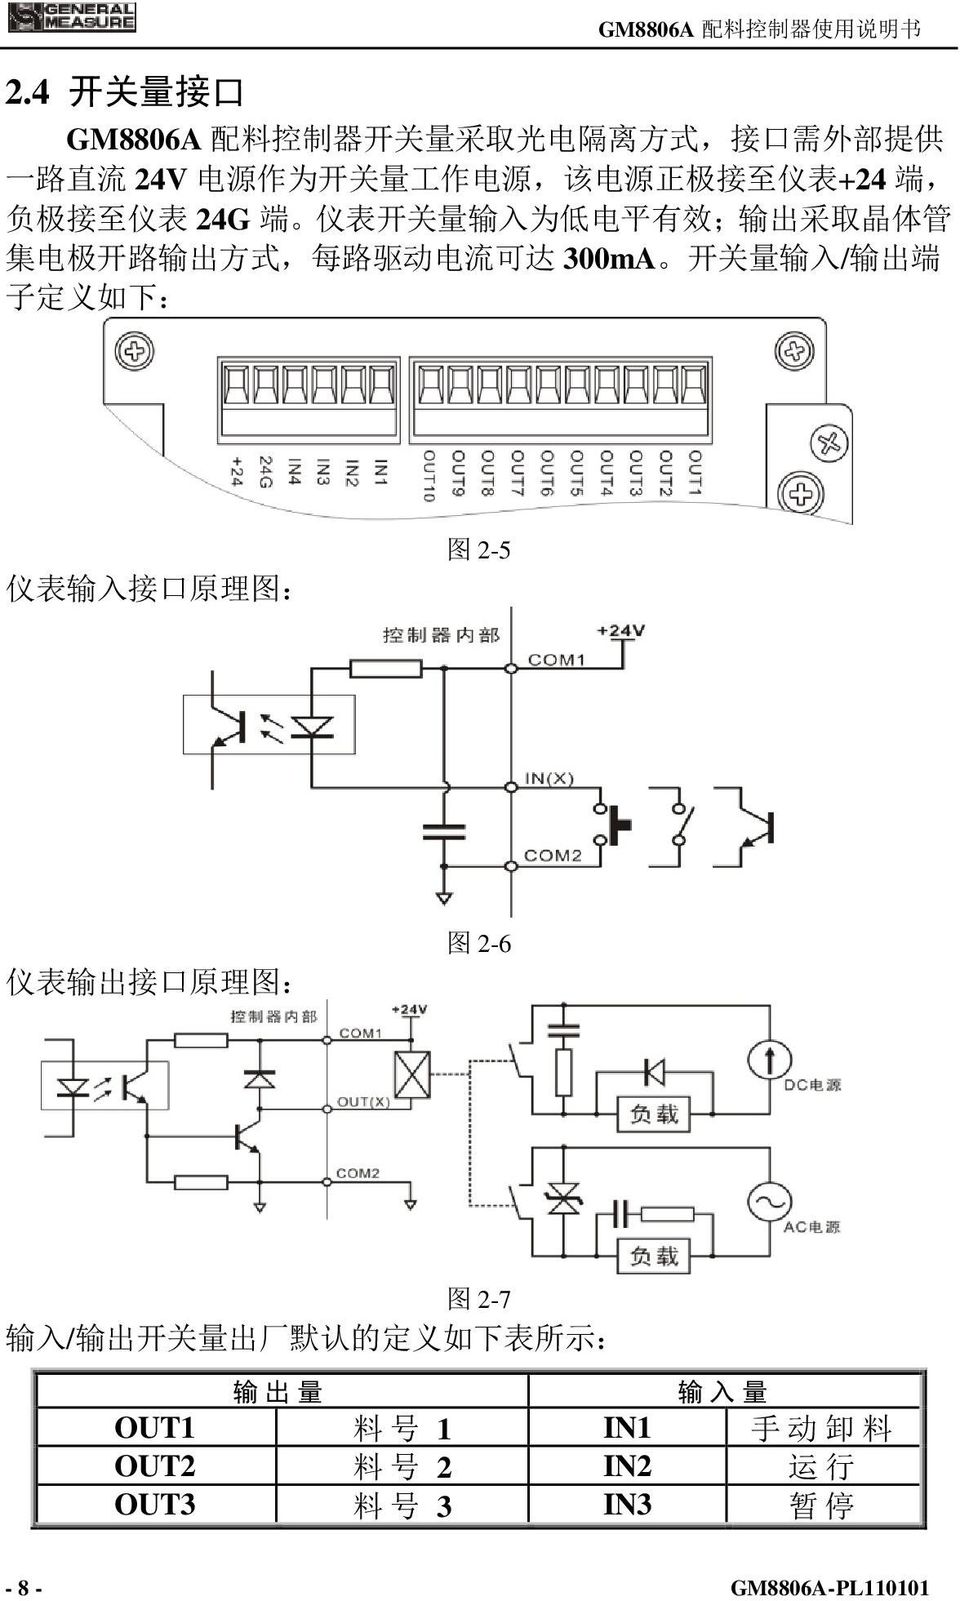 动 电 流 可 达 300mA 开 关 量 输 入 / 输 出 端 子 定 义 如 下 : 仪 表 输 入 接 口 原 理 图 : 图 2-5 仪 表 输 出 接 口 原 理 图 : 图 2-6 图 2-7 输 入 / 输 出 开 关 量